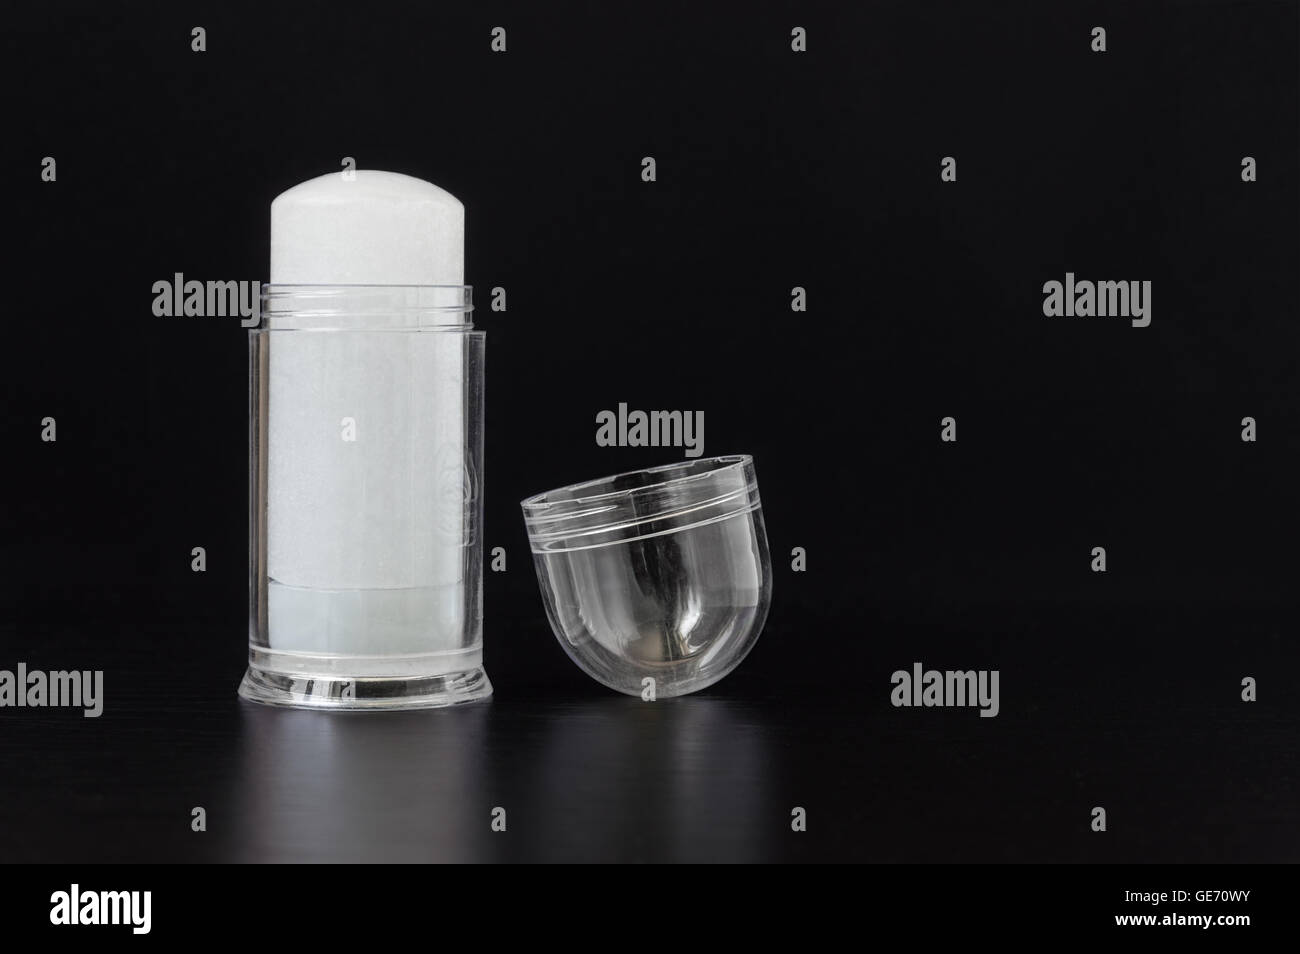 Cristallo di allume push-up deodorante stick protettivo in custodia di plastica trasparente su sfondo nero Foto Stock